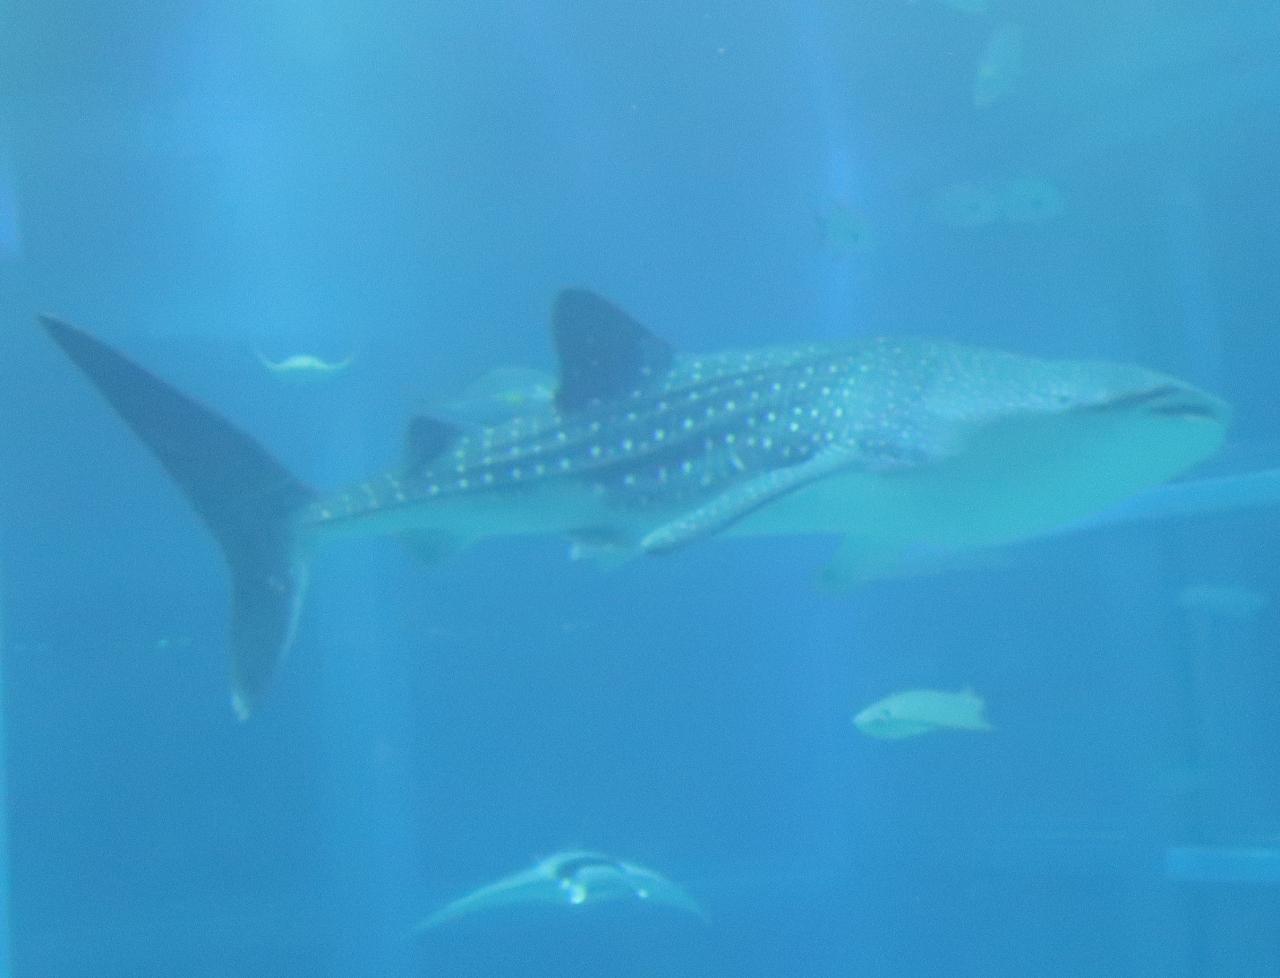 大阪-9 海遊館b ジンベエザメ 魚類で最大の種 ☆悠然と泳ぐ二頭を追跡 